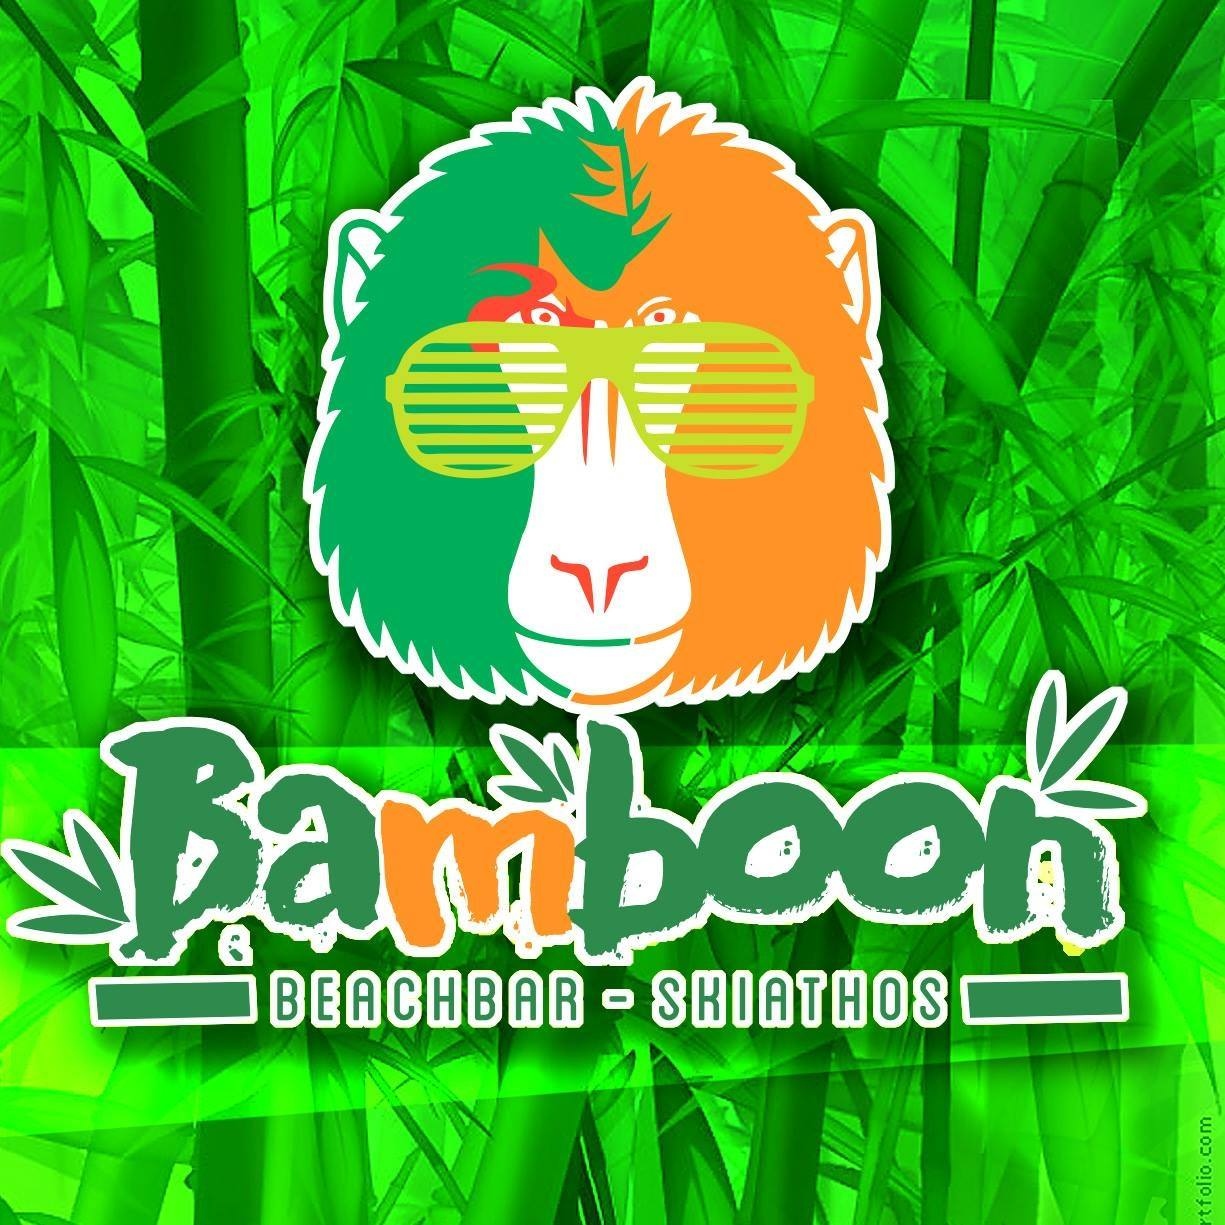 Bamboon beach bar